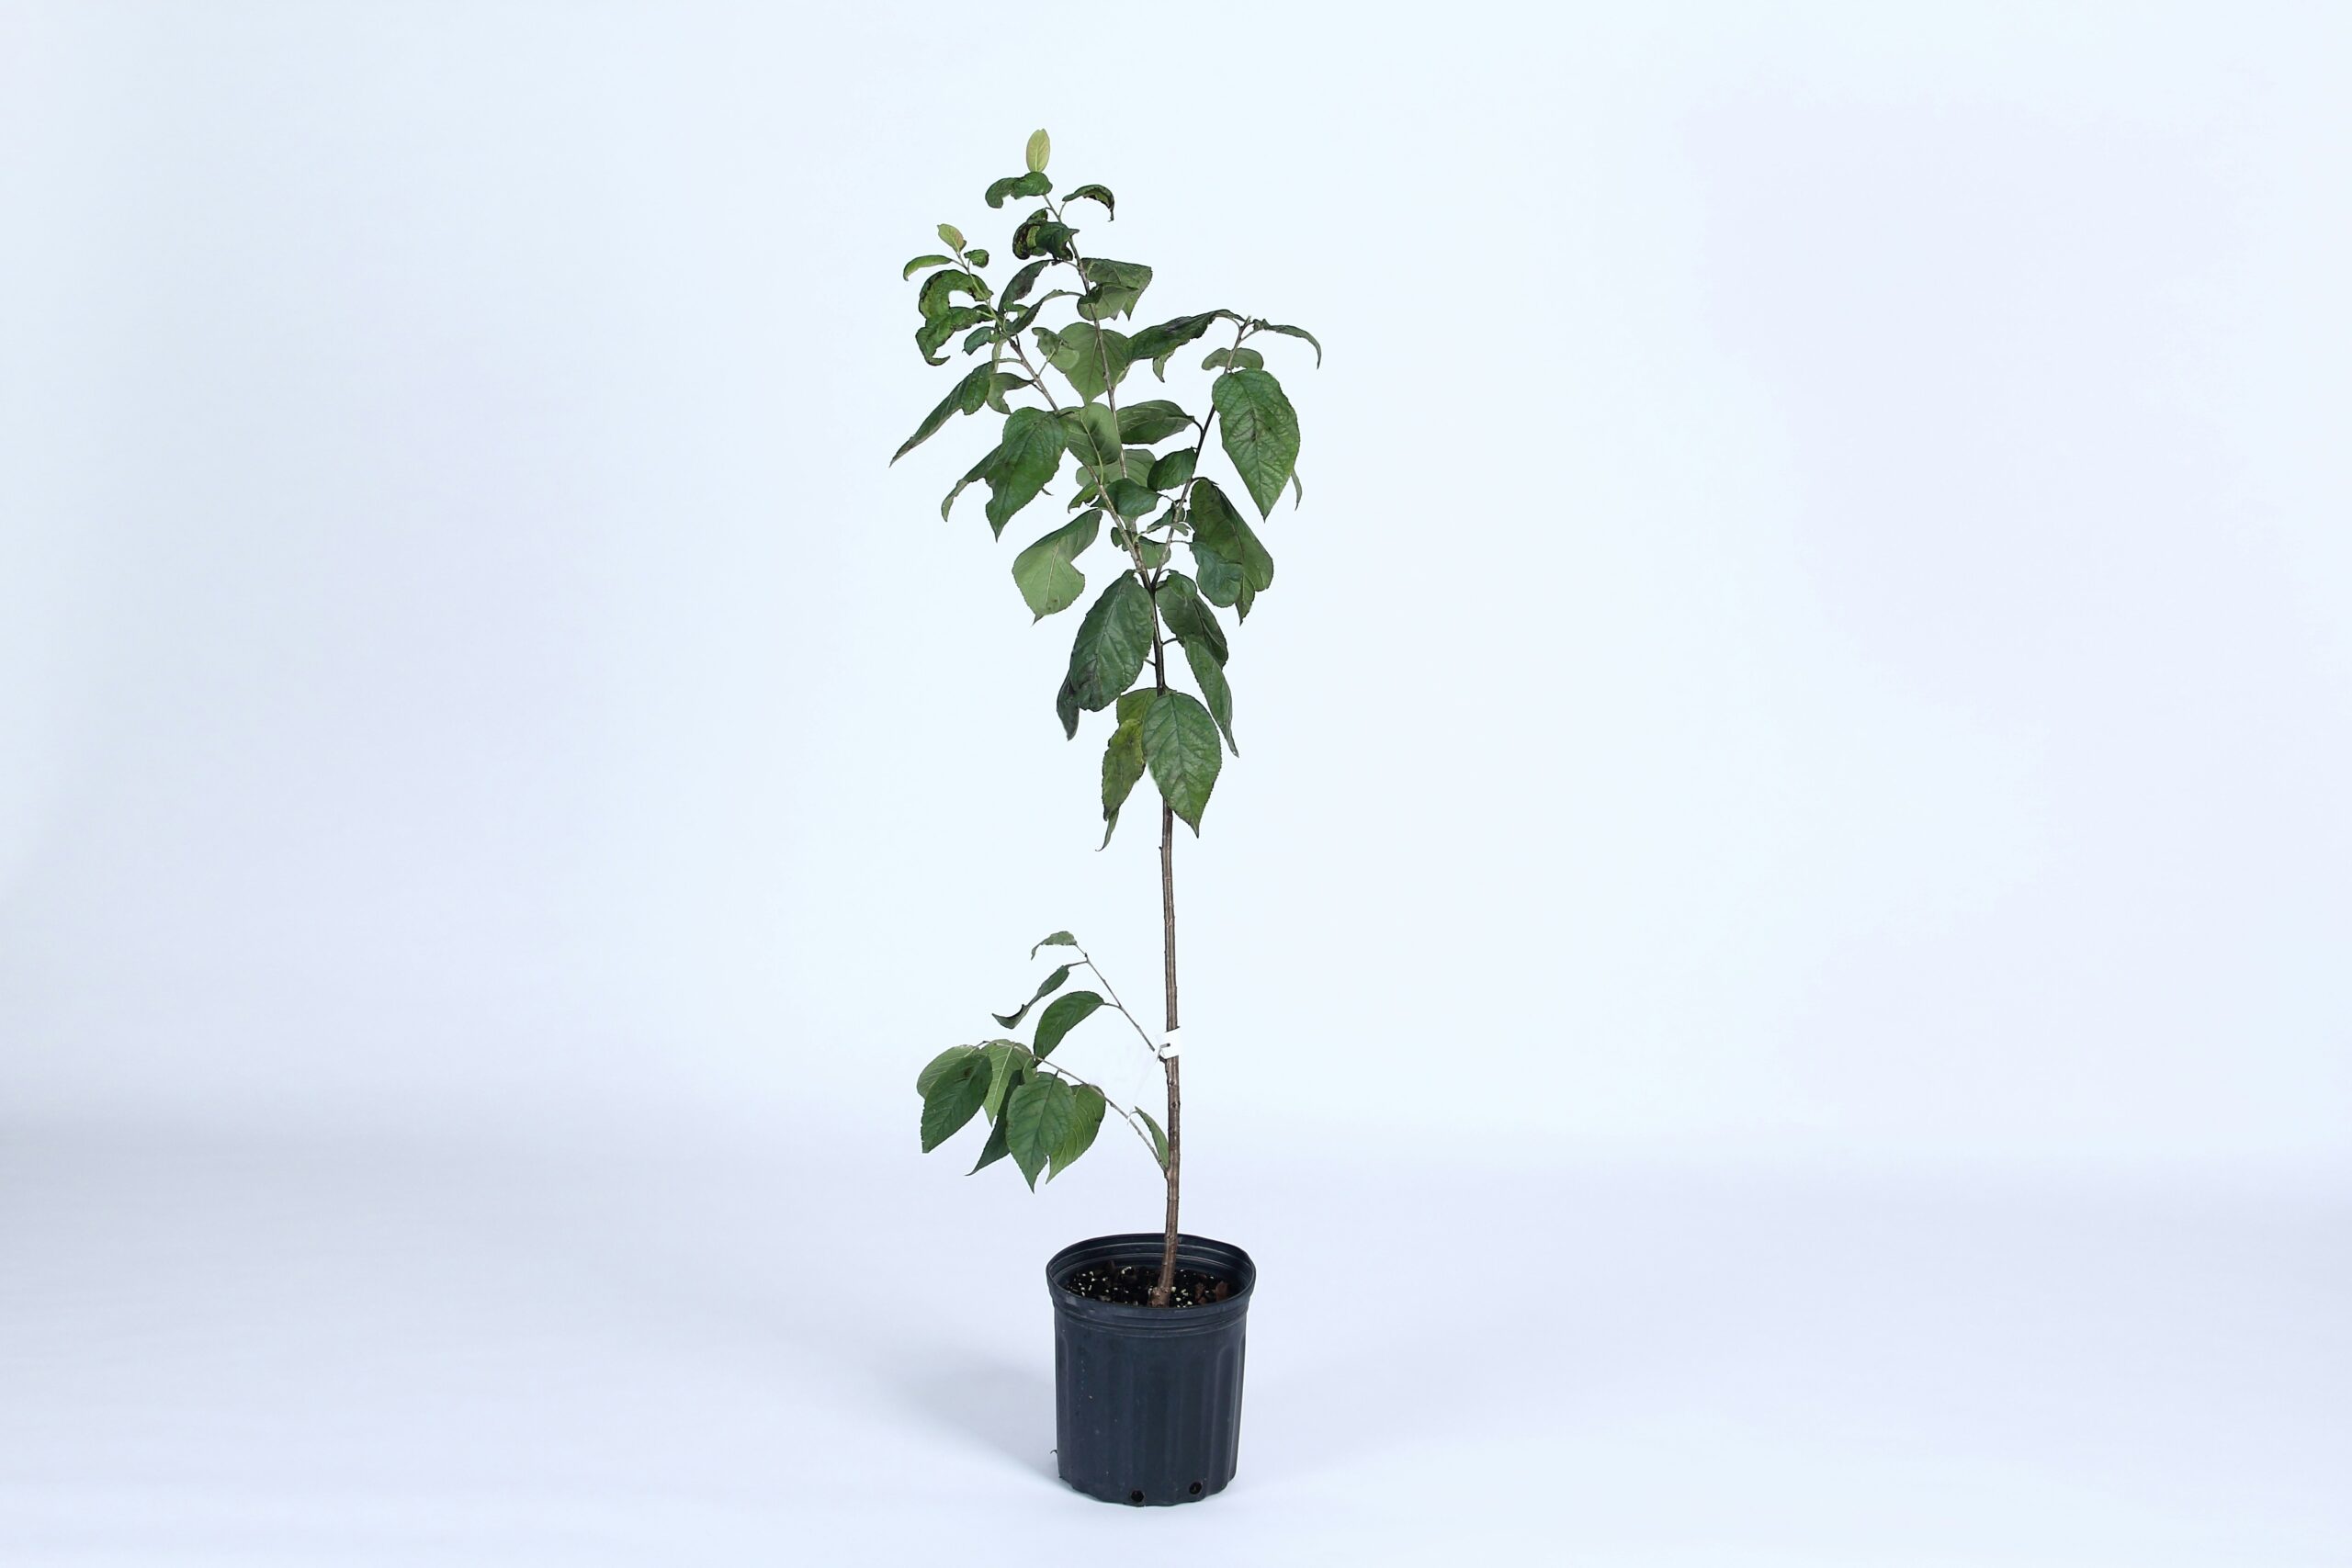 Source: https://unsplash.com/photos/green-plant-on-black-pot-qeHnyL1sa98 Title: Tree Plantation Alt. Title: Eco-Friendly Event Planning Description: A plant pot